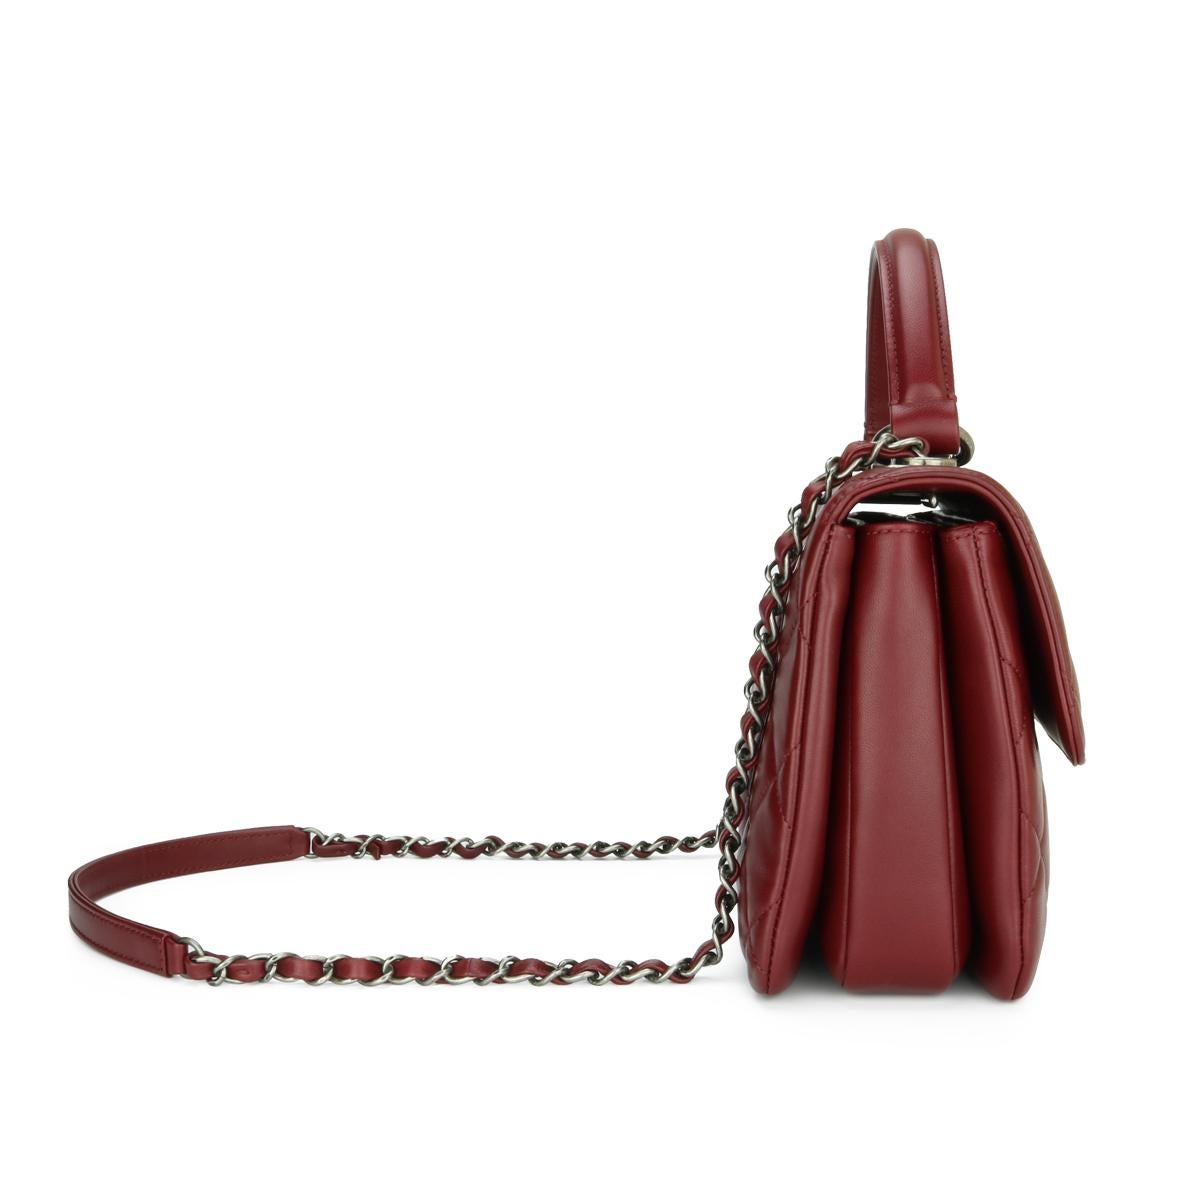 CHANEL Trendy CC Tasche aus burgunderrotem Lammfell mit Ruthenium-Hardware 2015 für Damen oder Herren